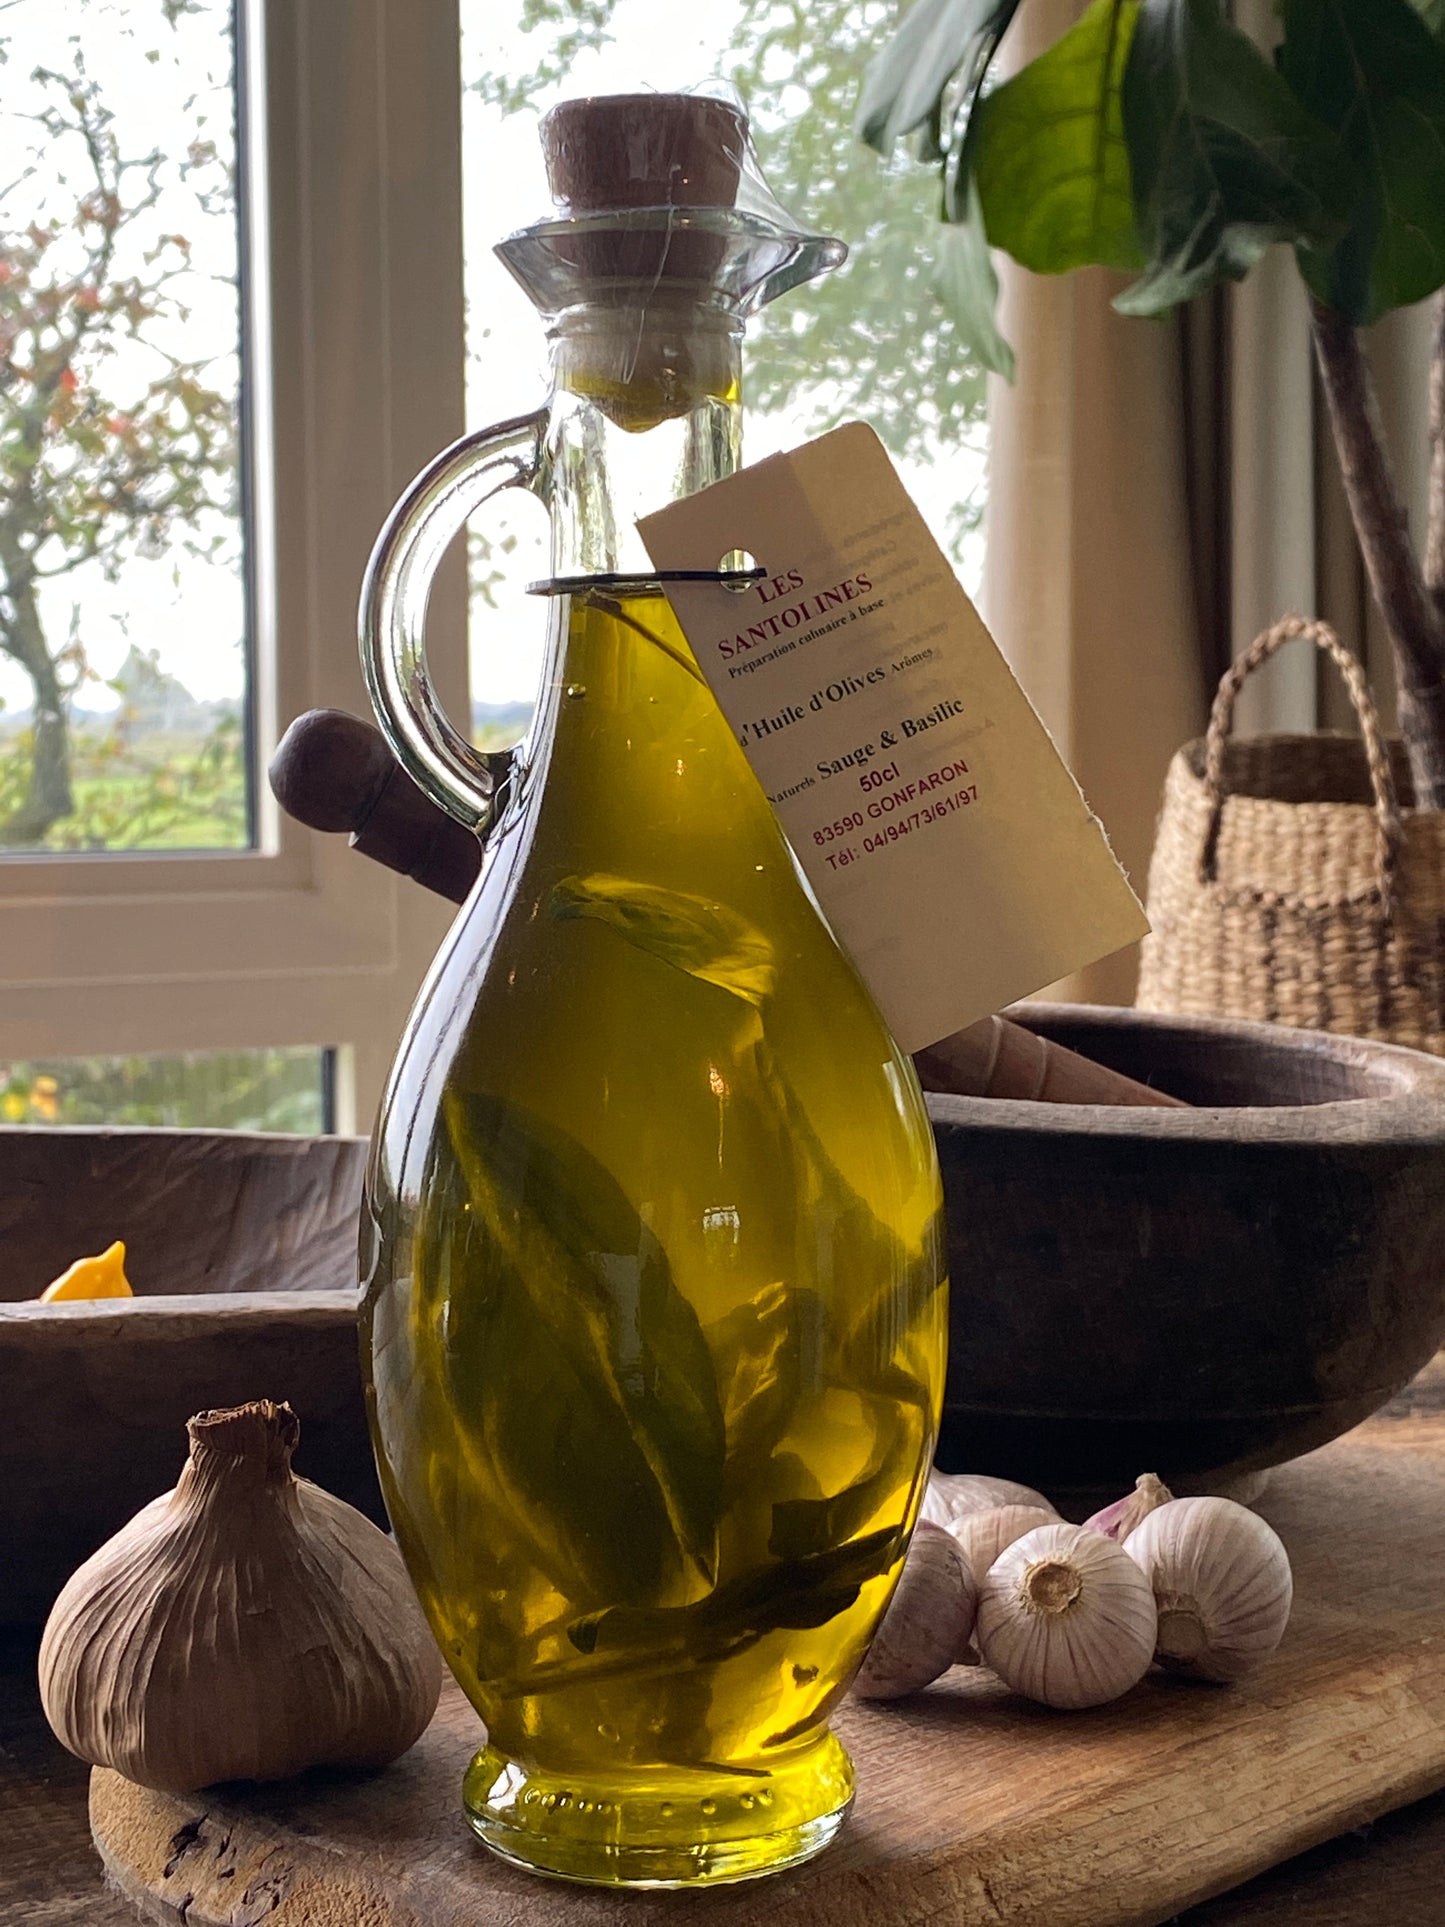 Olivový olej šalvěj a bazalka